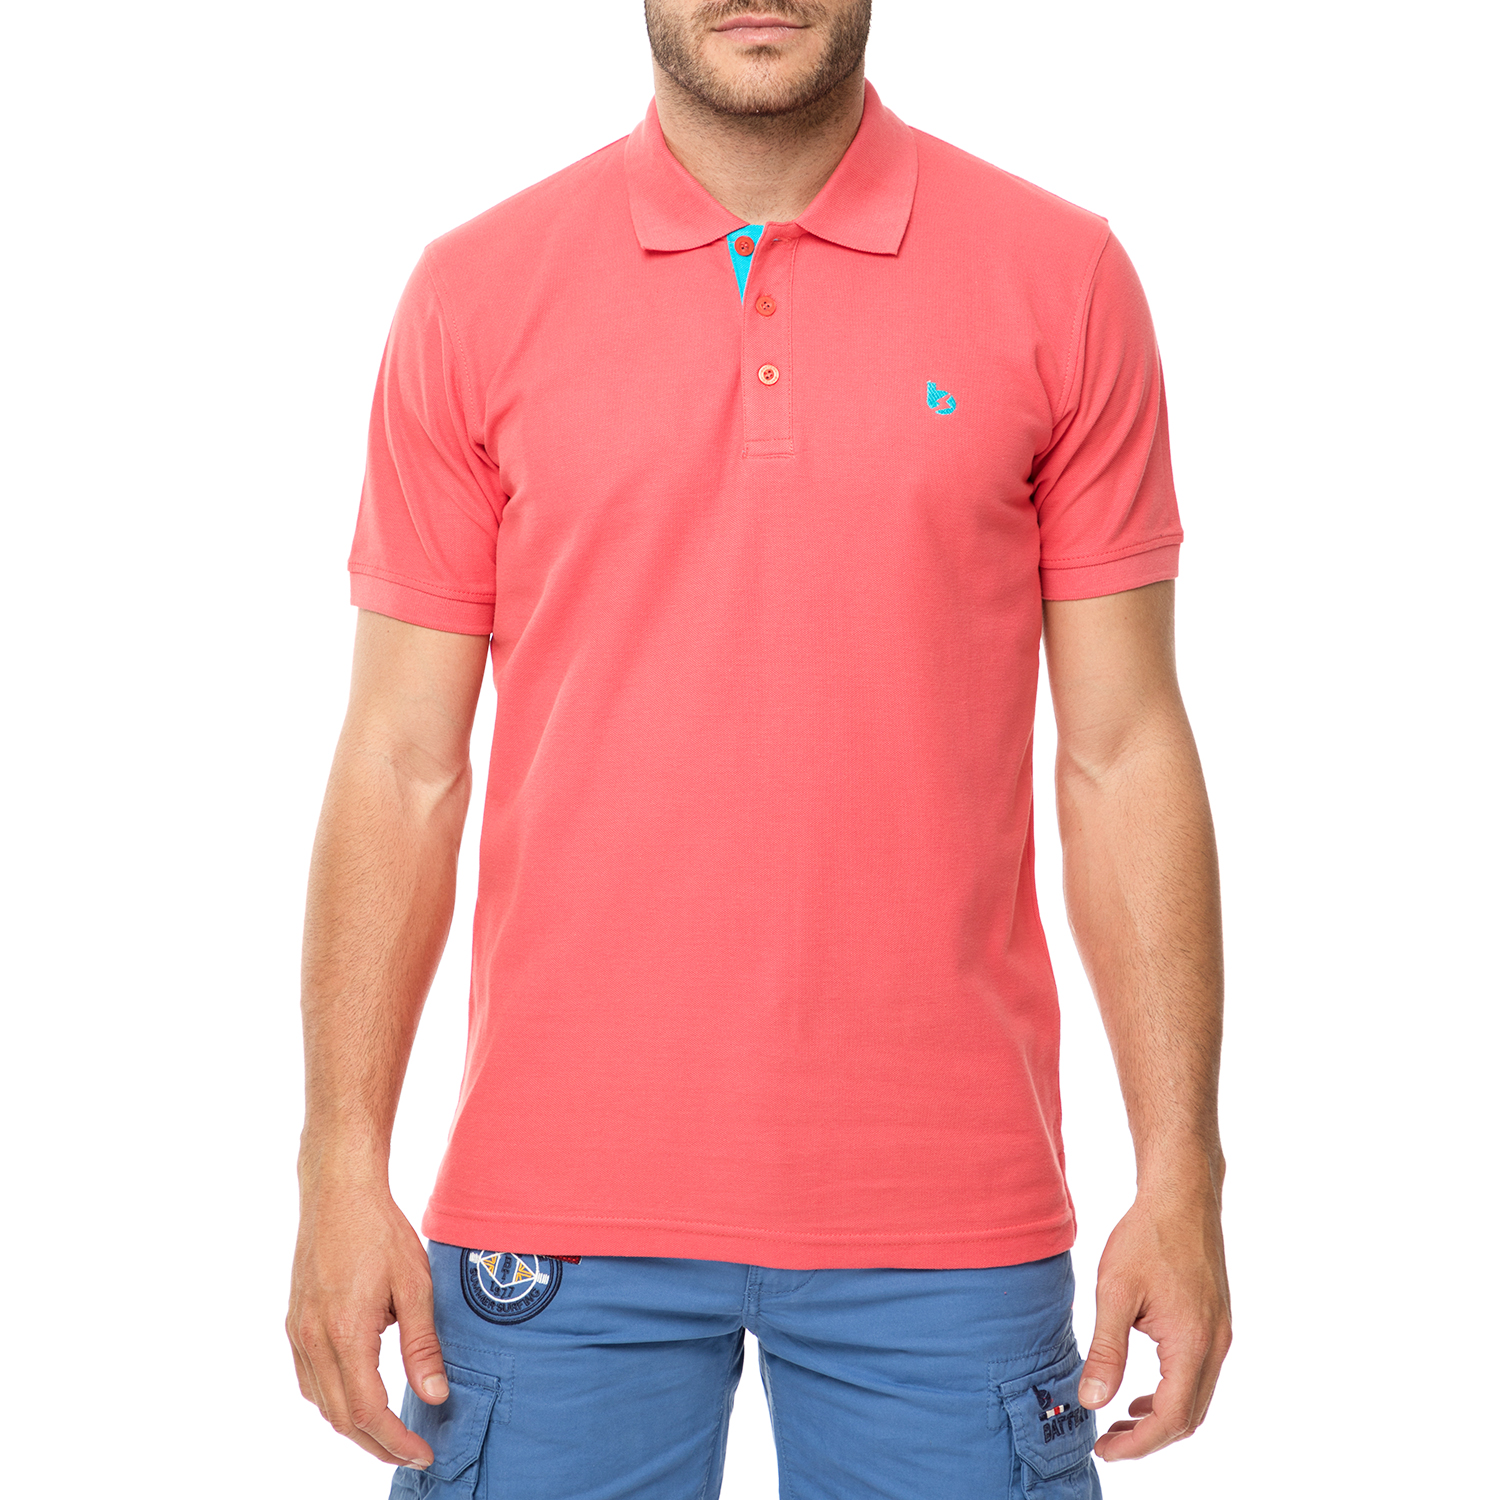 Ανδρικά/Ρούχα/Μπλούζες/Πόλο BATTERY - Ανδρικό πόλο t-shirt BATTERY κοραλί